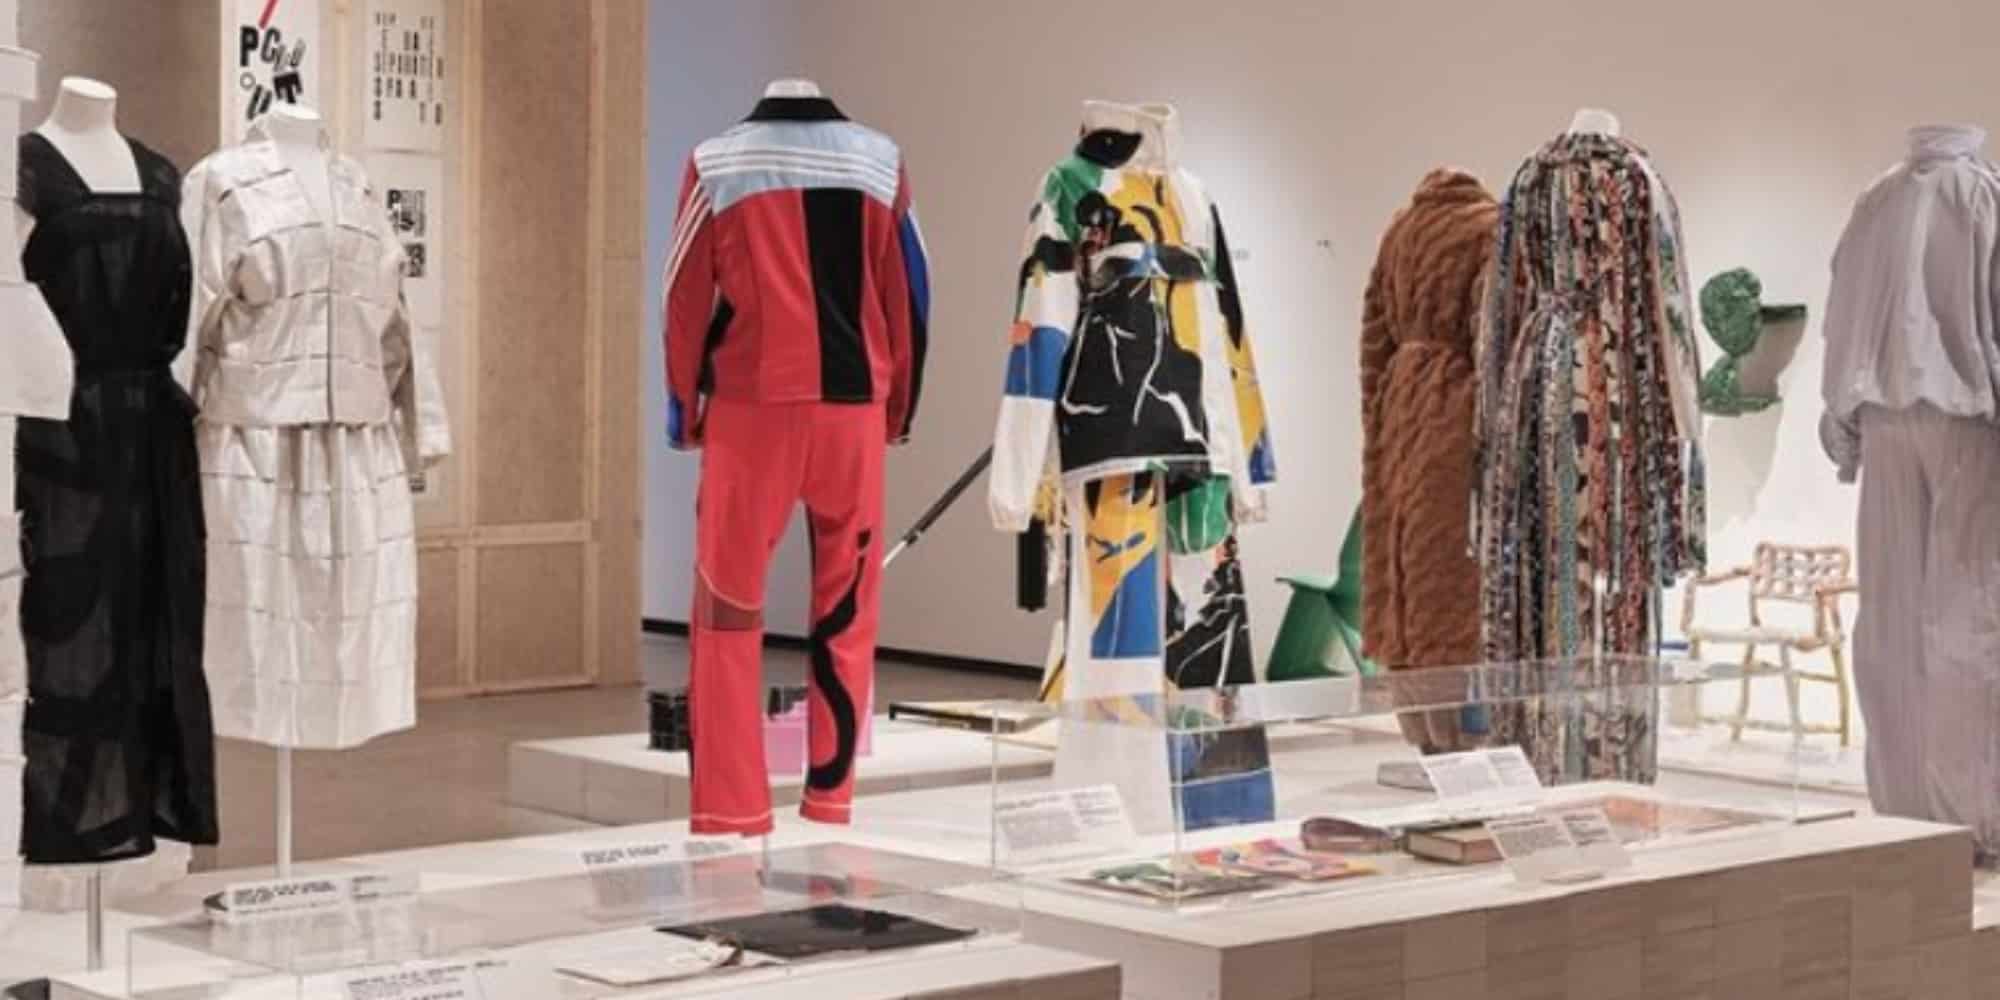 Έκθεση αφιερωμένη στη σχεδιάστρια μόδας Μπέθανι Γουίλιαμς στο Μουσείο Σχεδιασμού του Λονδίνου